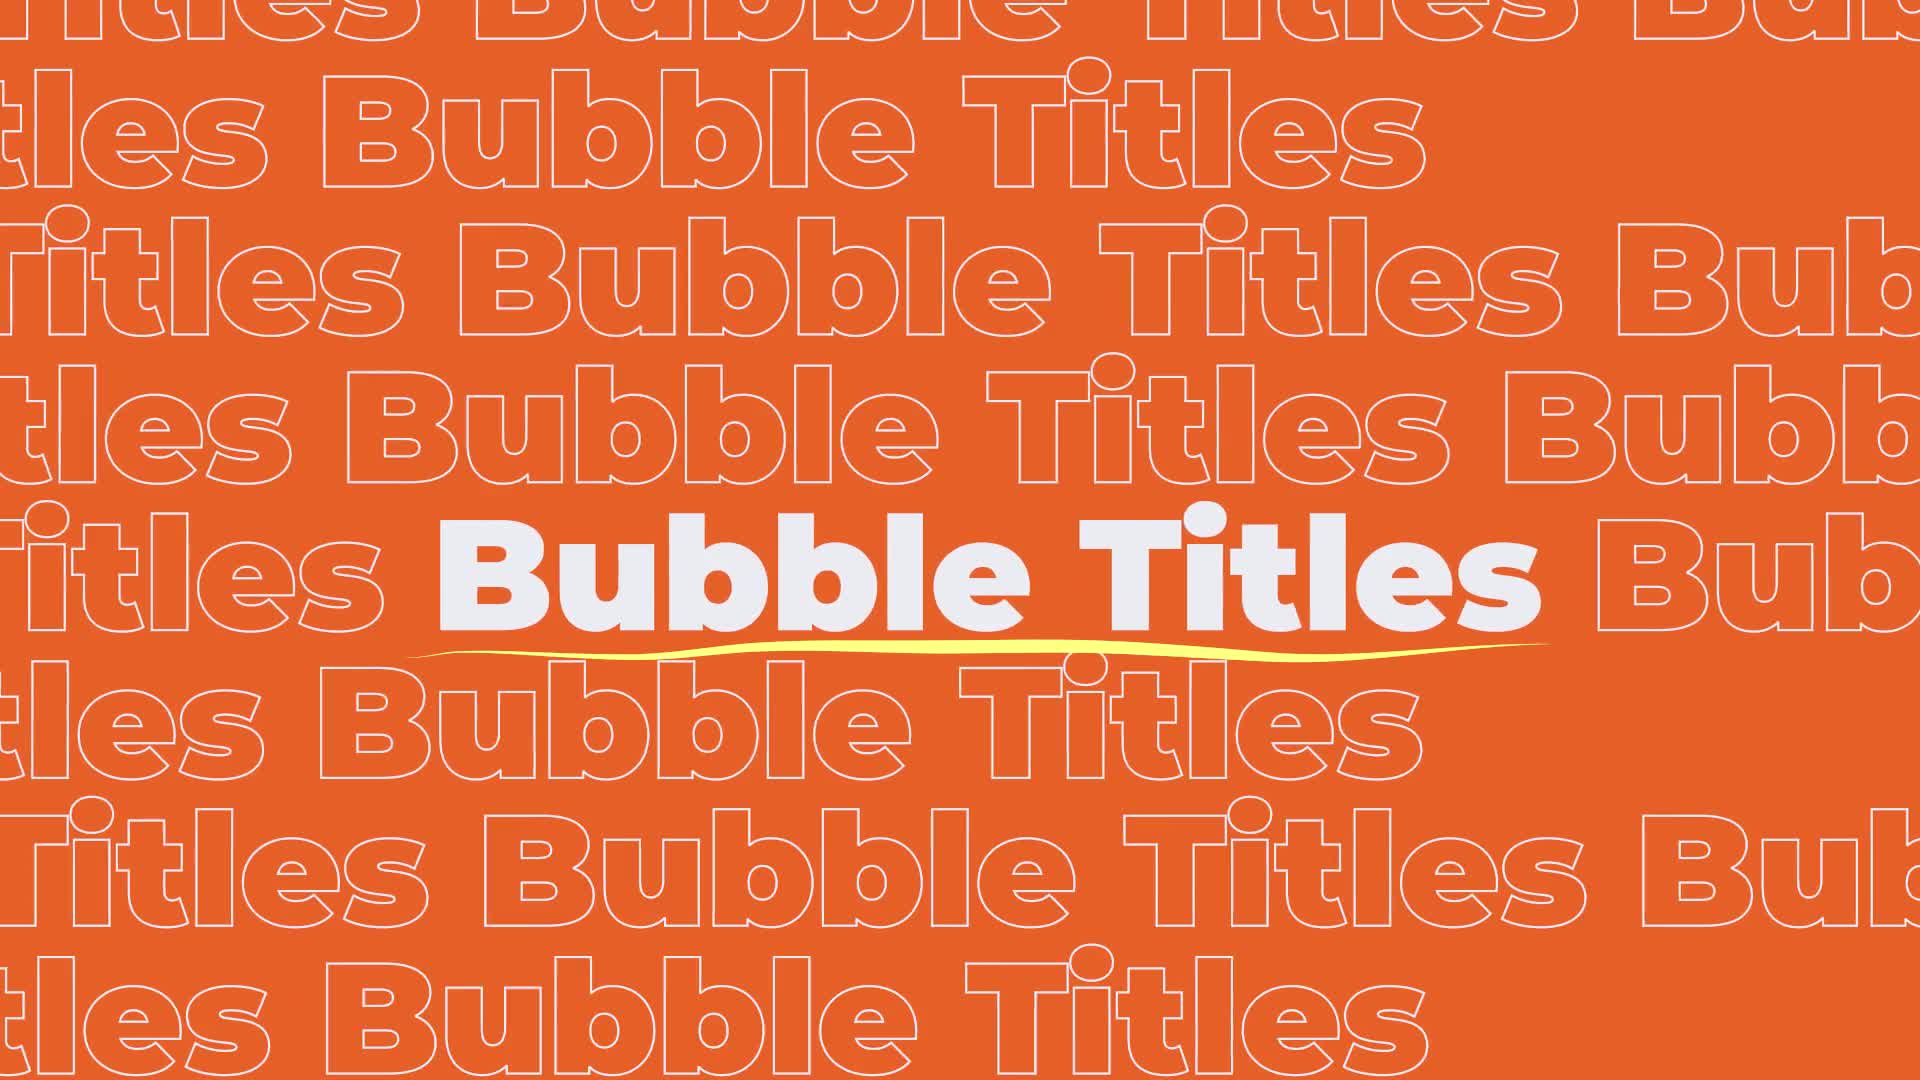 Bubble Titles Videohive 33853638 Premiere Pro Image 1